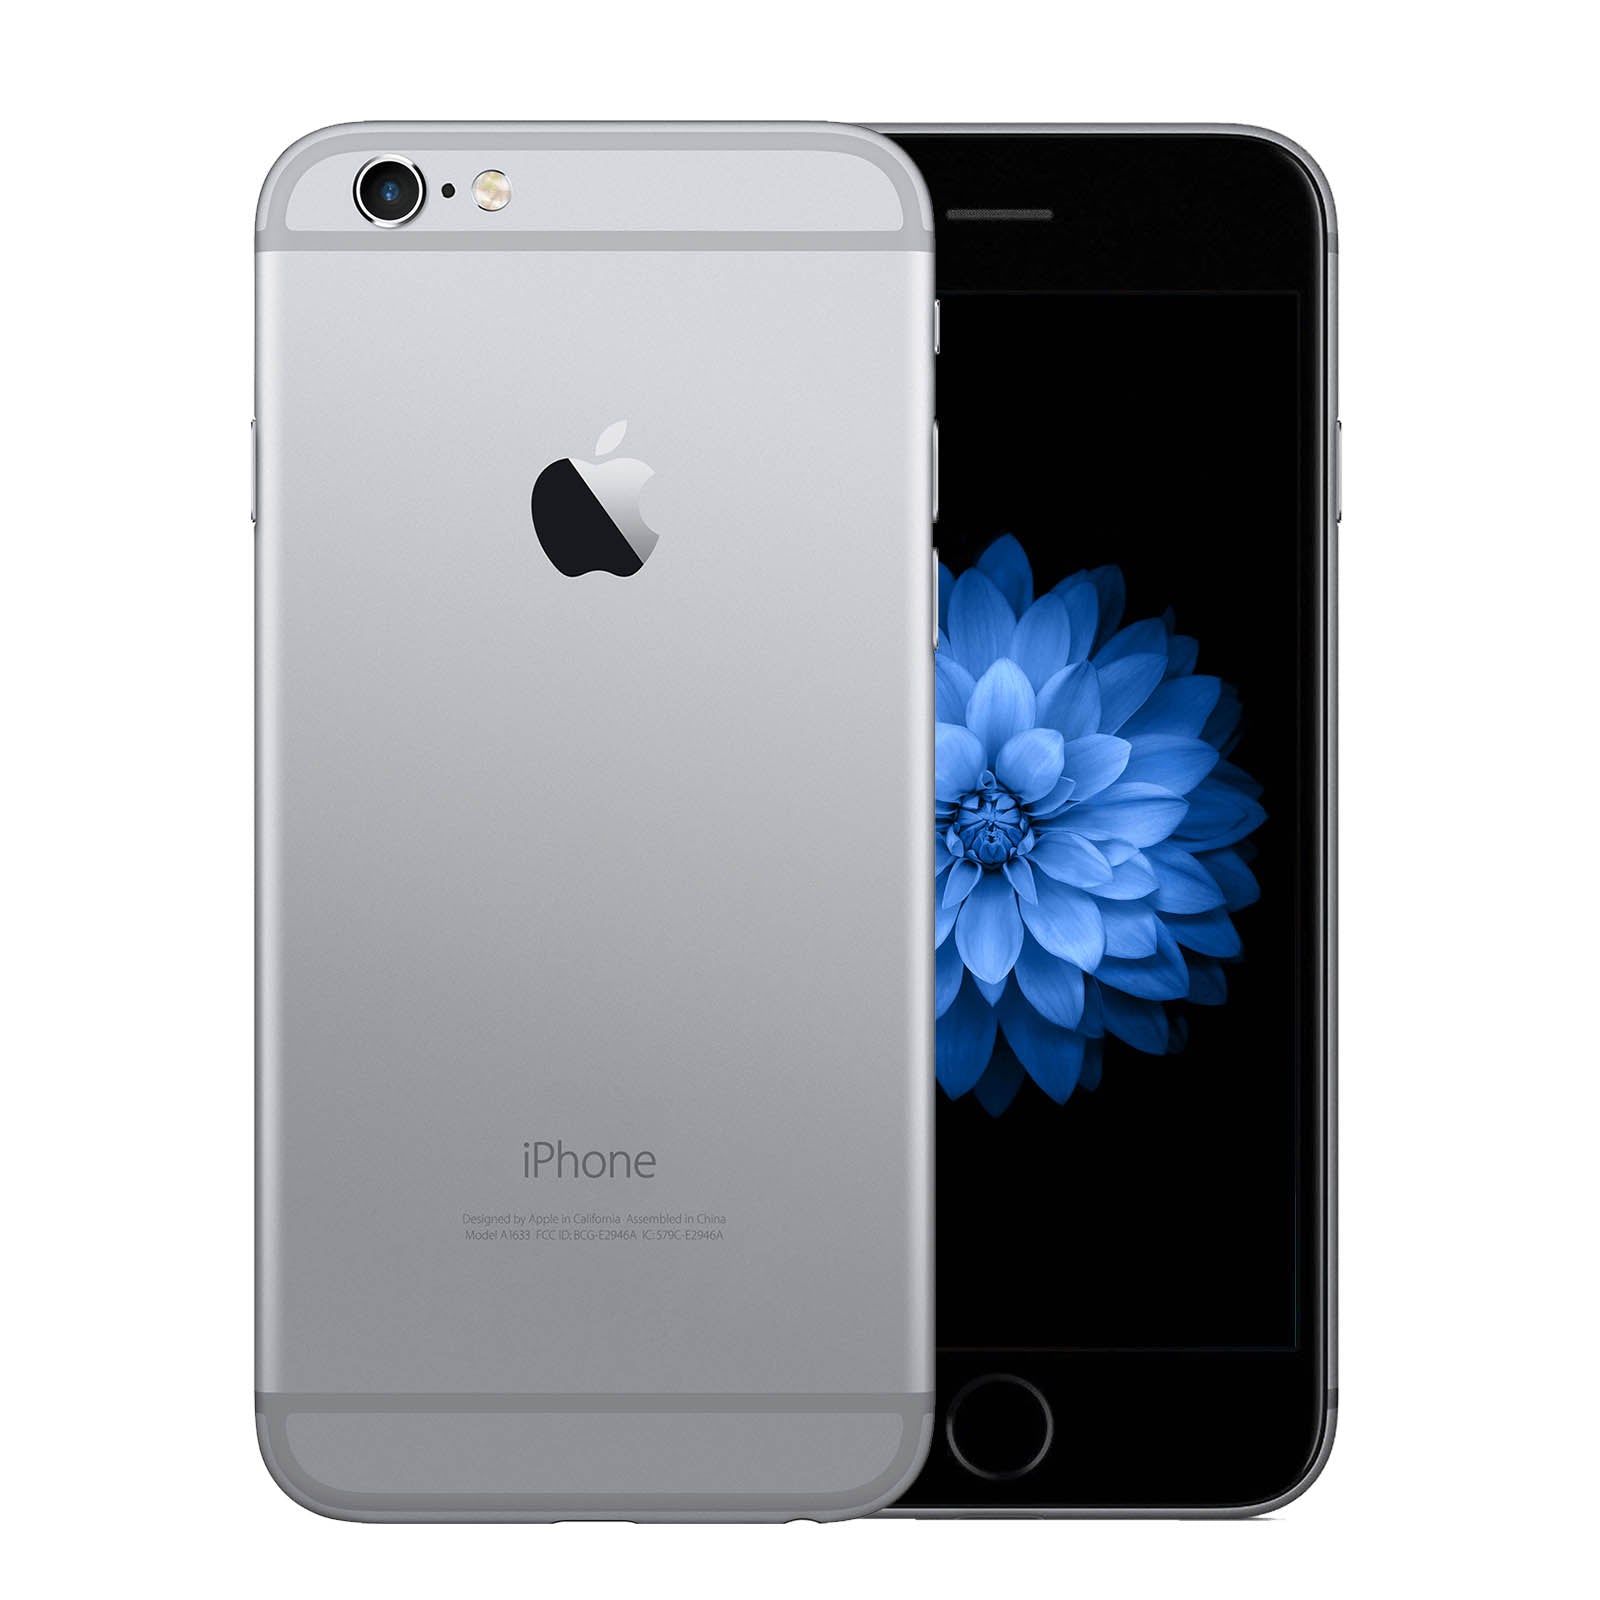 【即購入】iPhone6 Space Gray 128GB MG4A2J/A スマートフォン本体